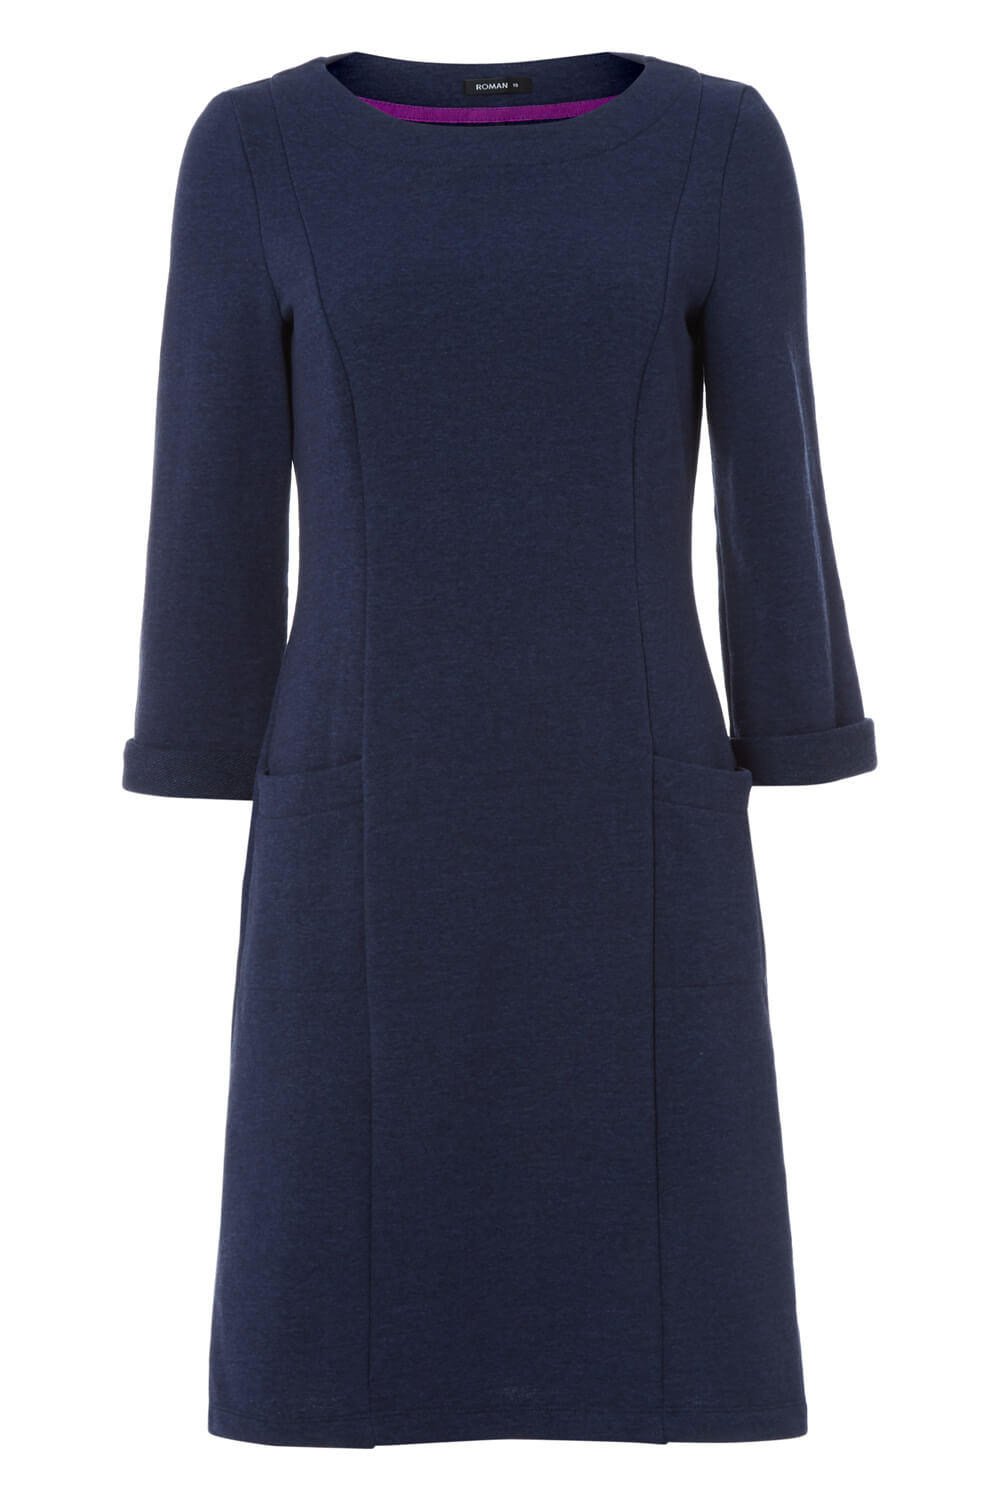 Blue Pocket Detail Shift Dress, Image 5 of 5